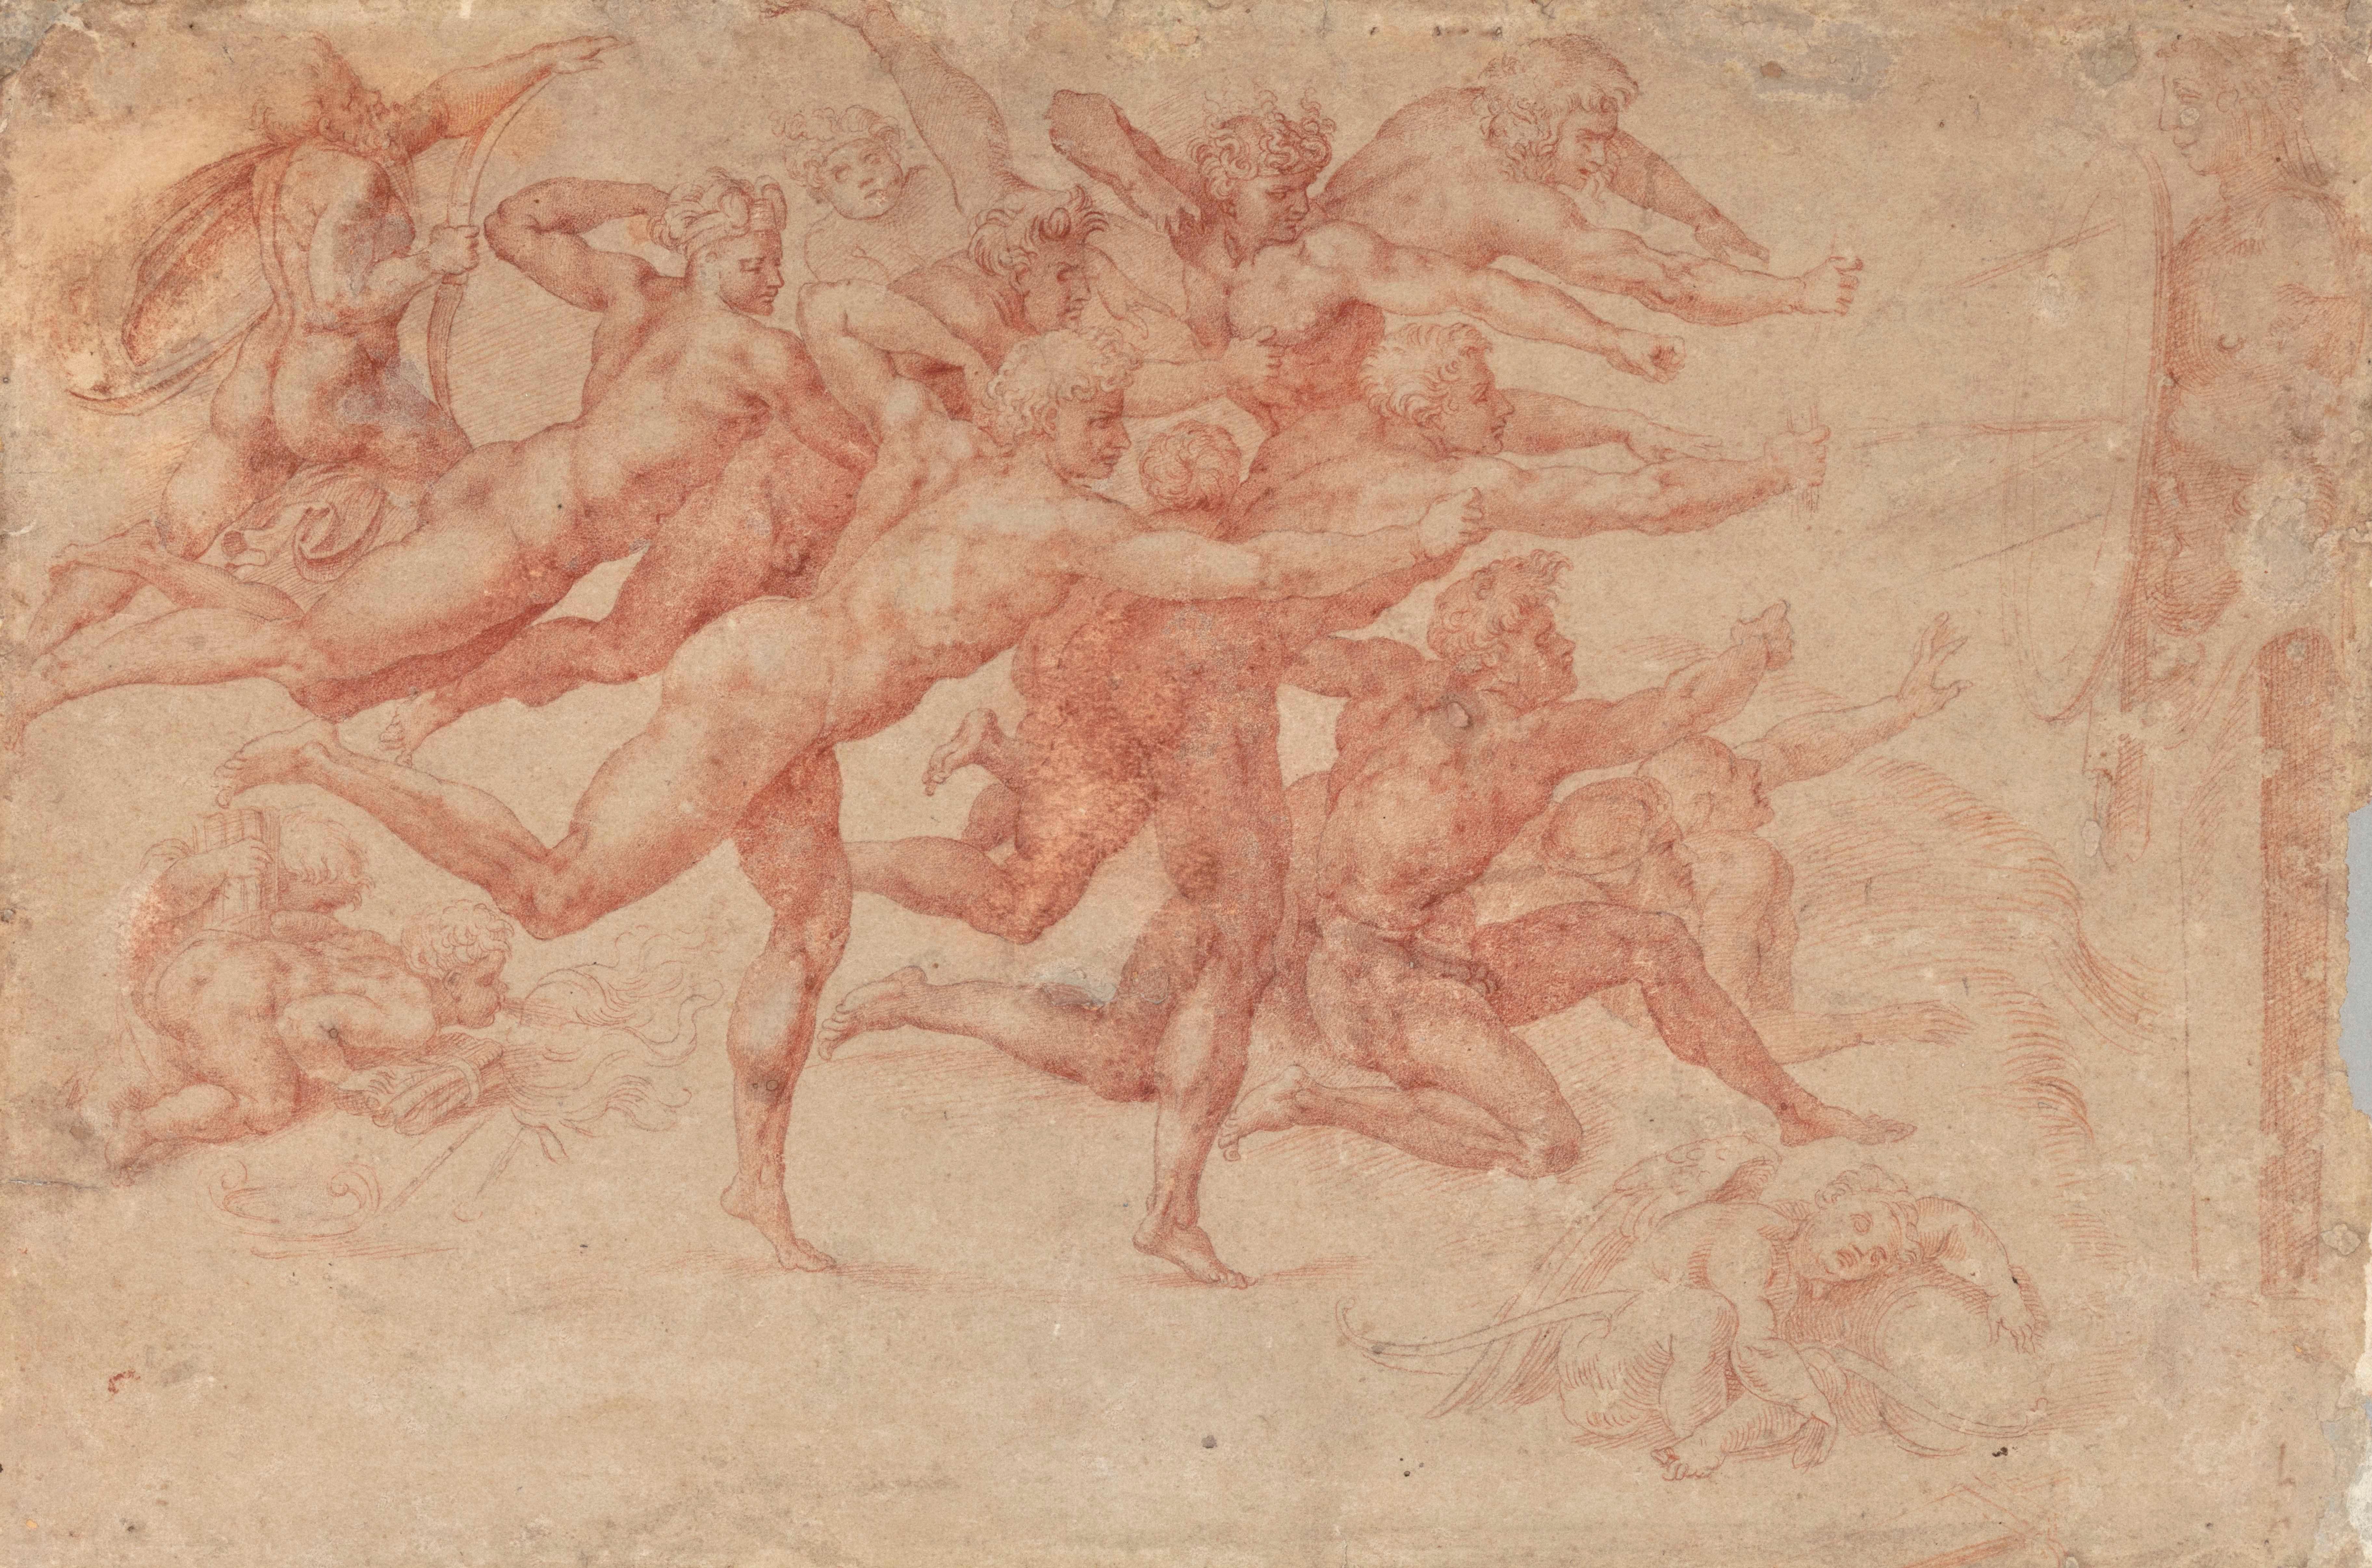 The Archers  - Art by Michelangelo Buonarroti